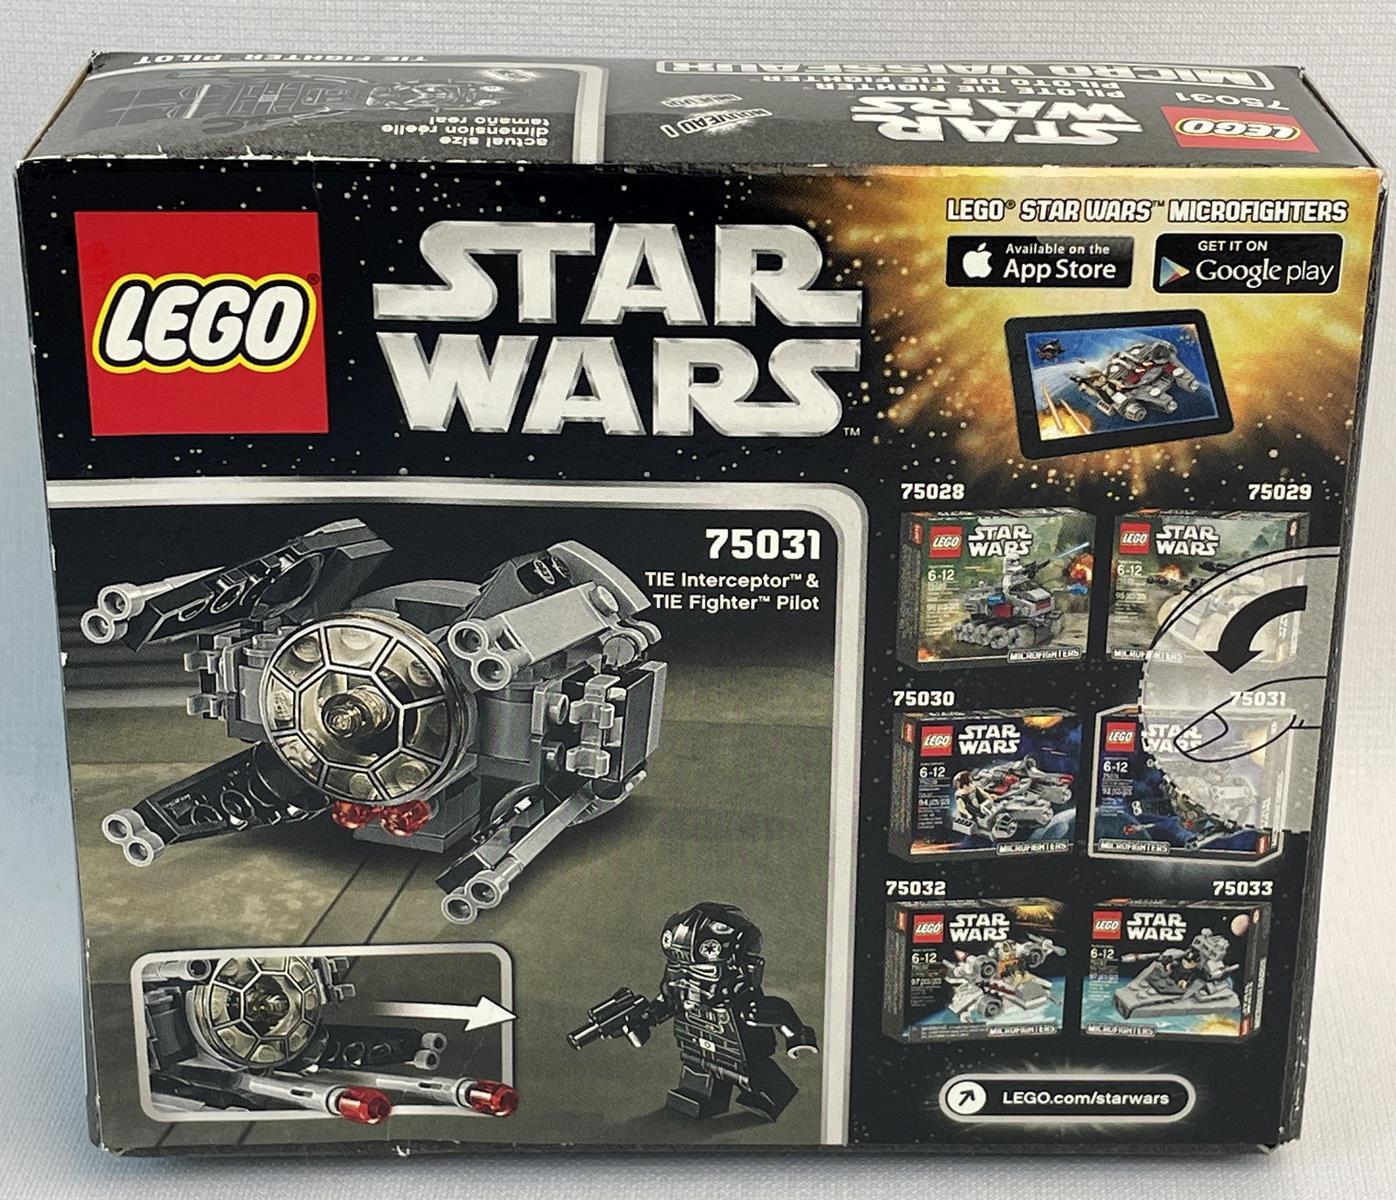 2014 LEGO Star Wars 75031 TIE Interceptor 'Microfighters' SEALED